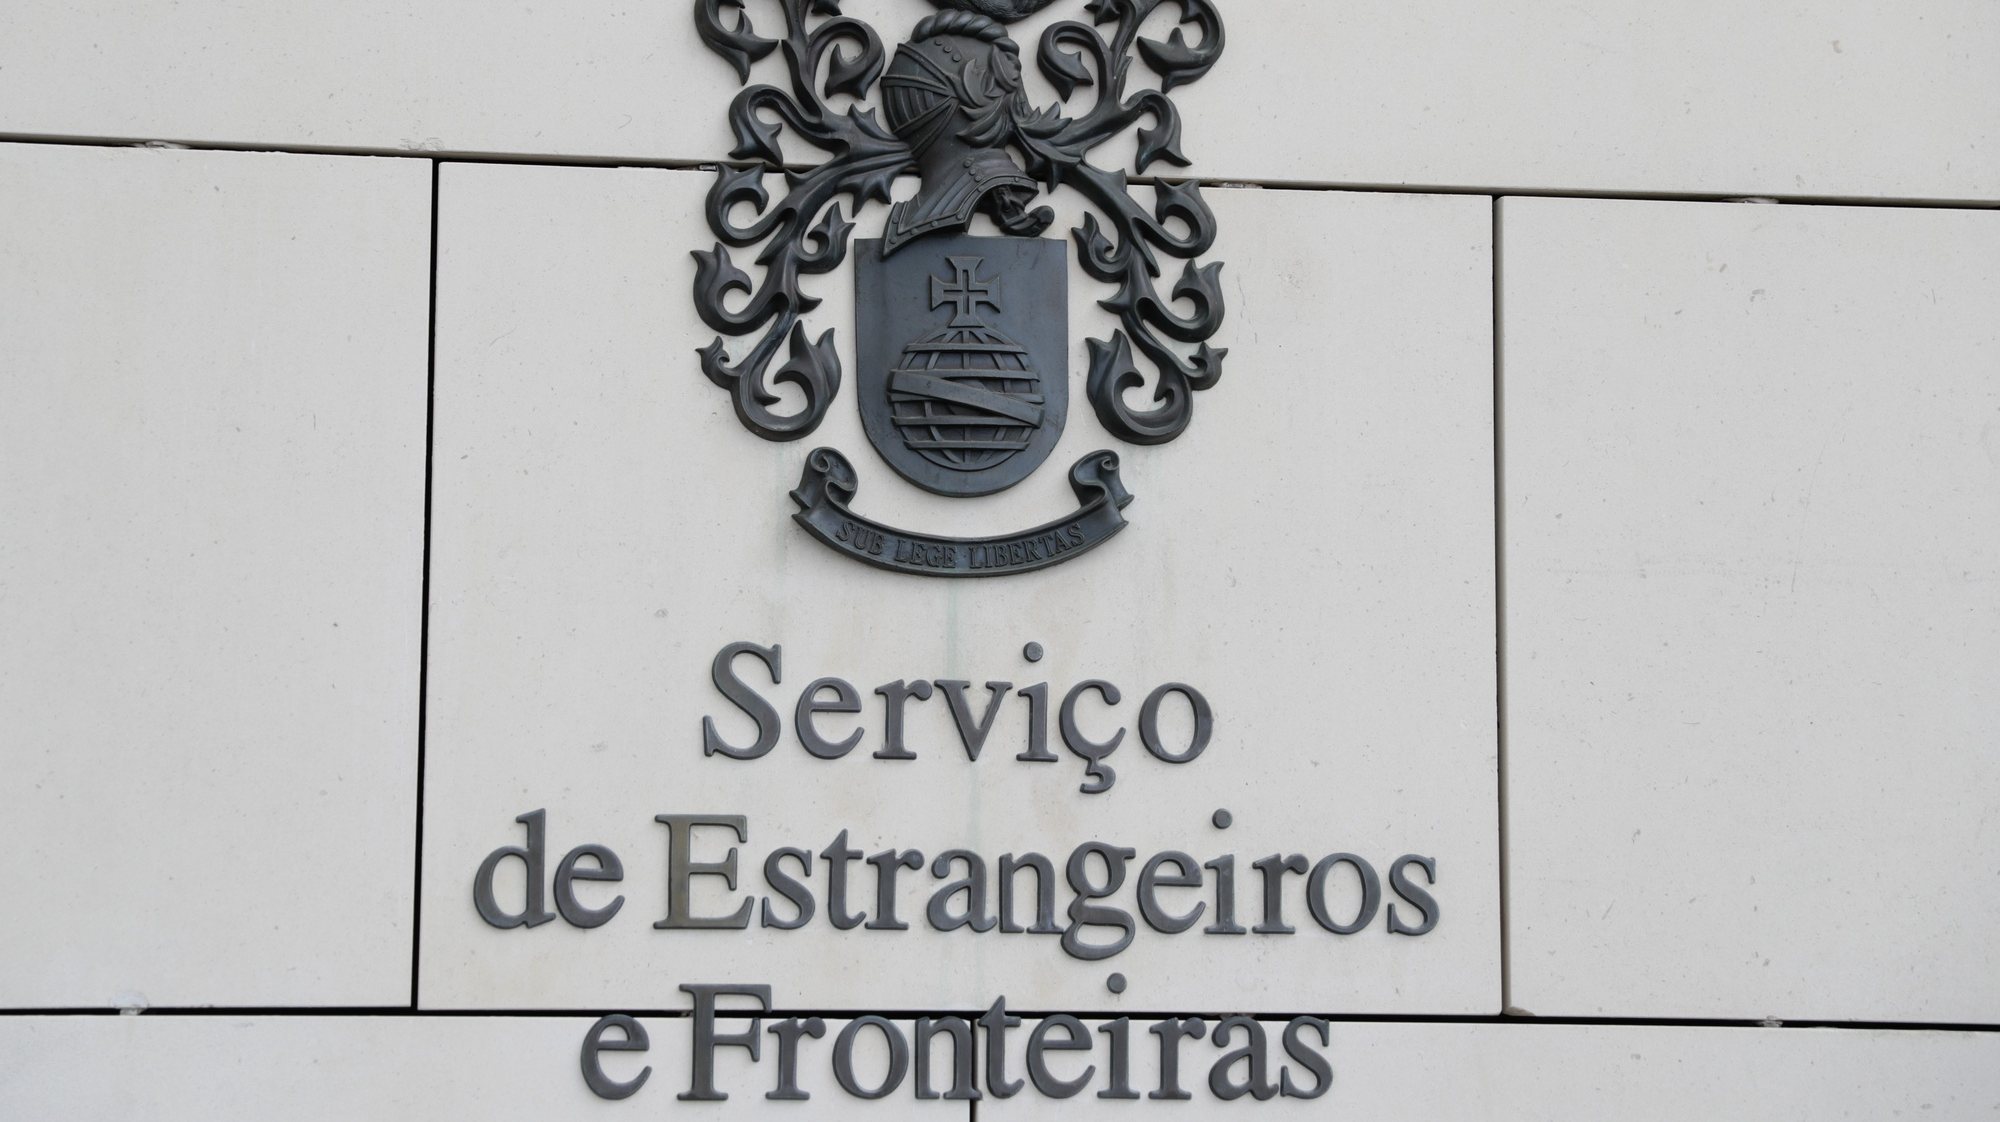 Sede do Serviço de Estrangeiros e Fronteiras em Barcarena, Sintra, 08 de abril de 2019. TIAGO PETINGA/LUSA